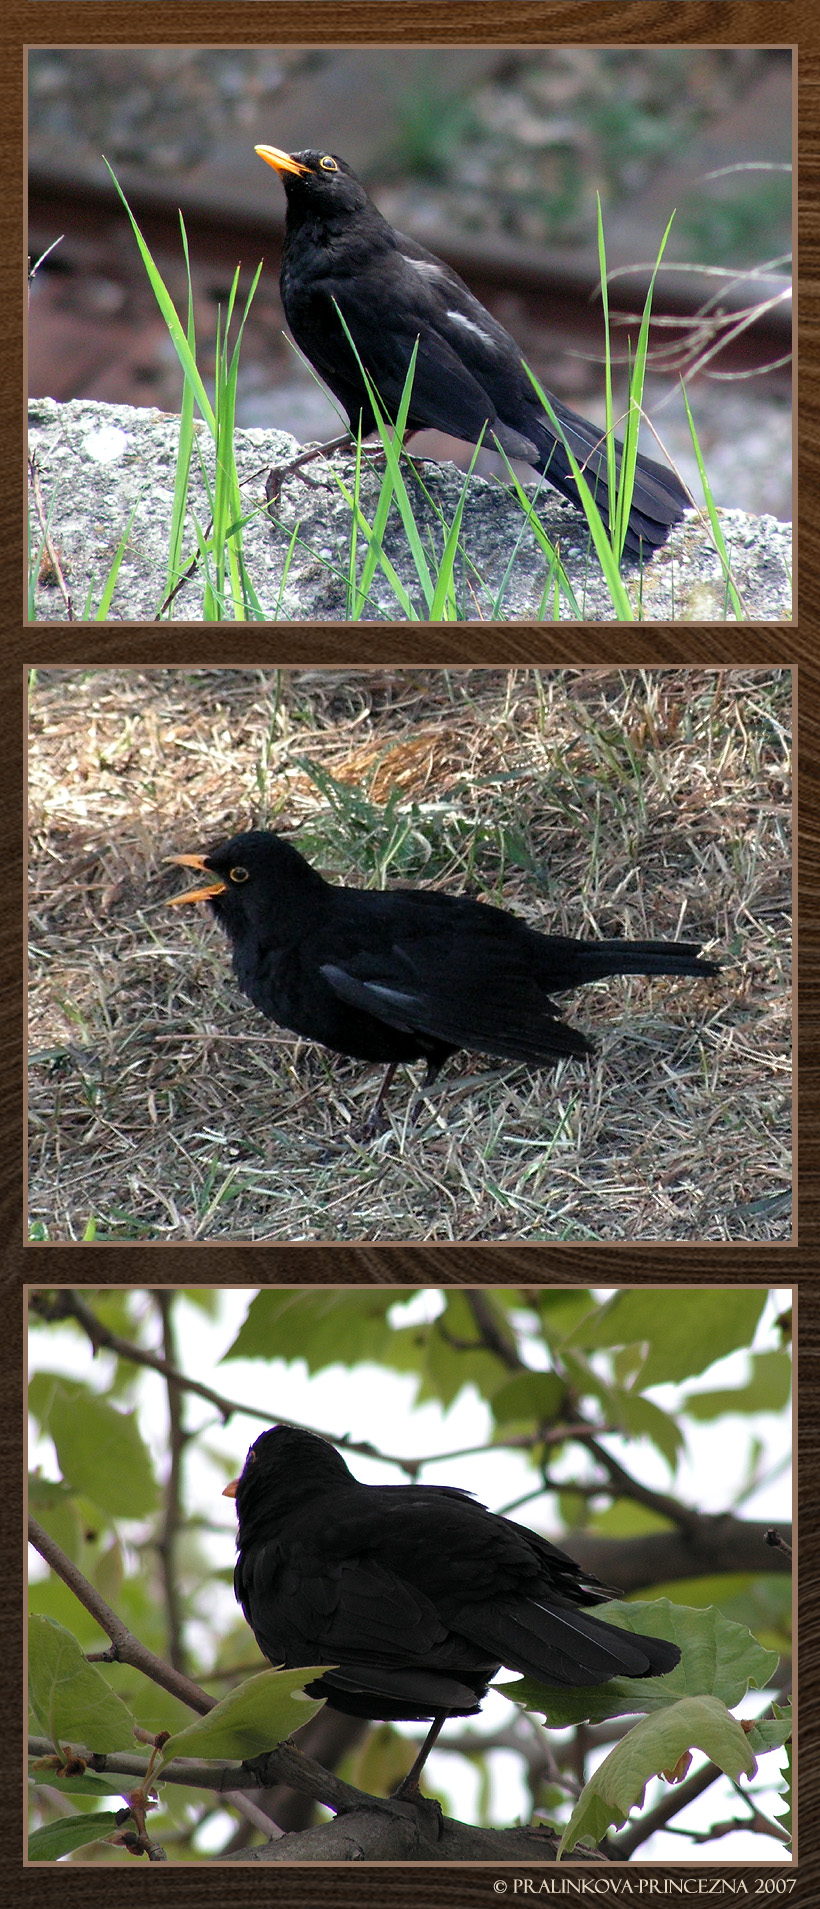 Funny blackbirds by pralinkova princezna